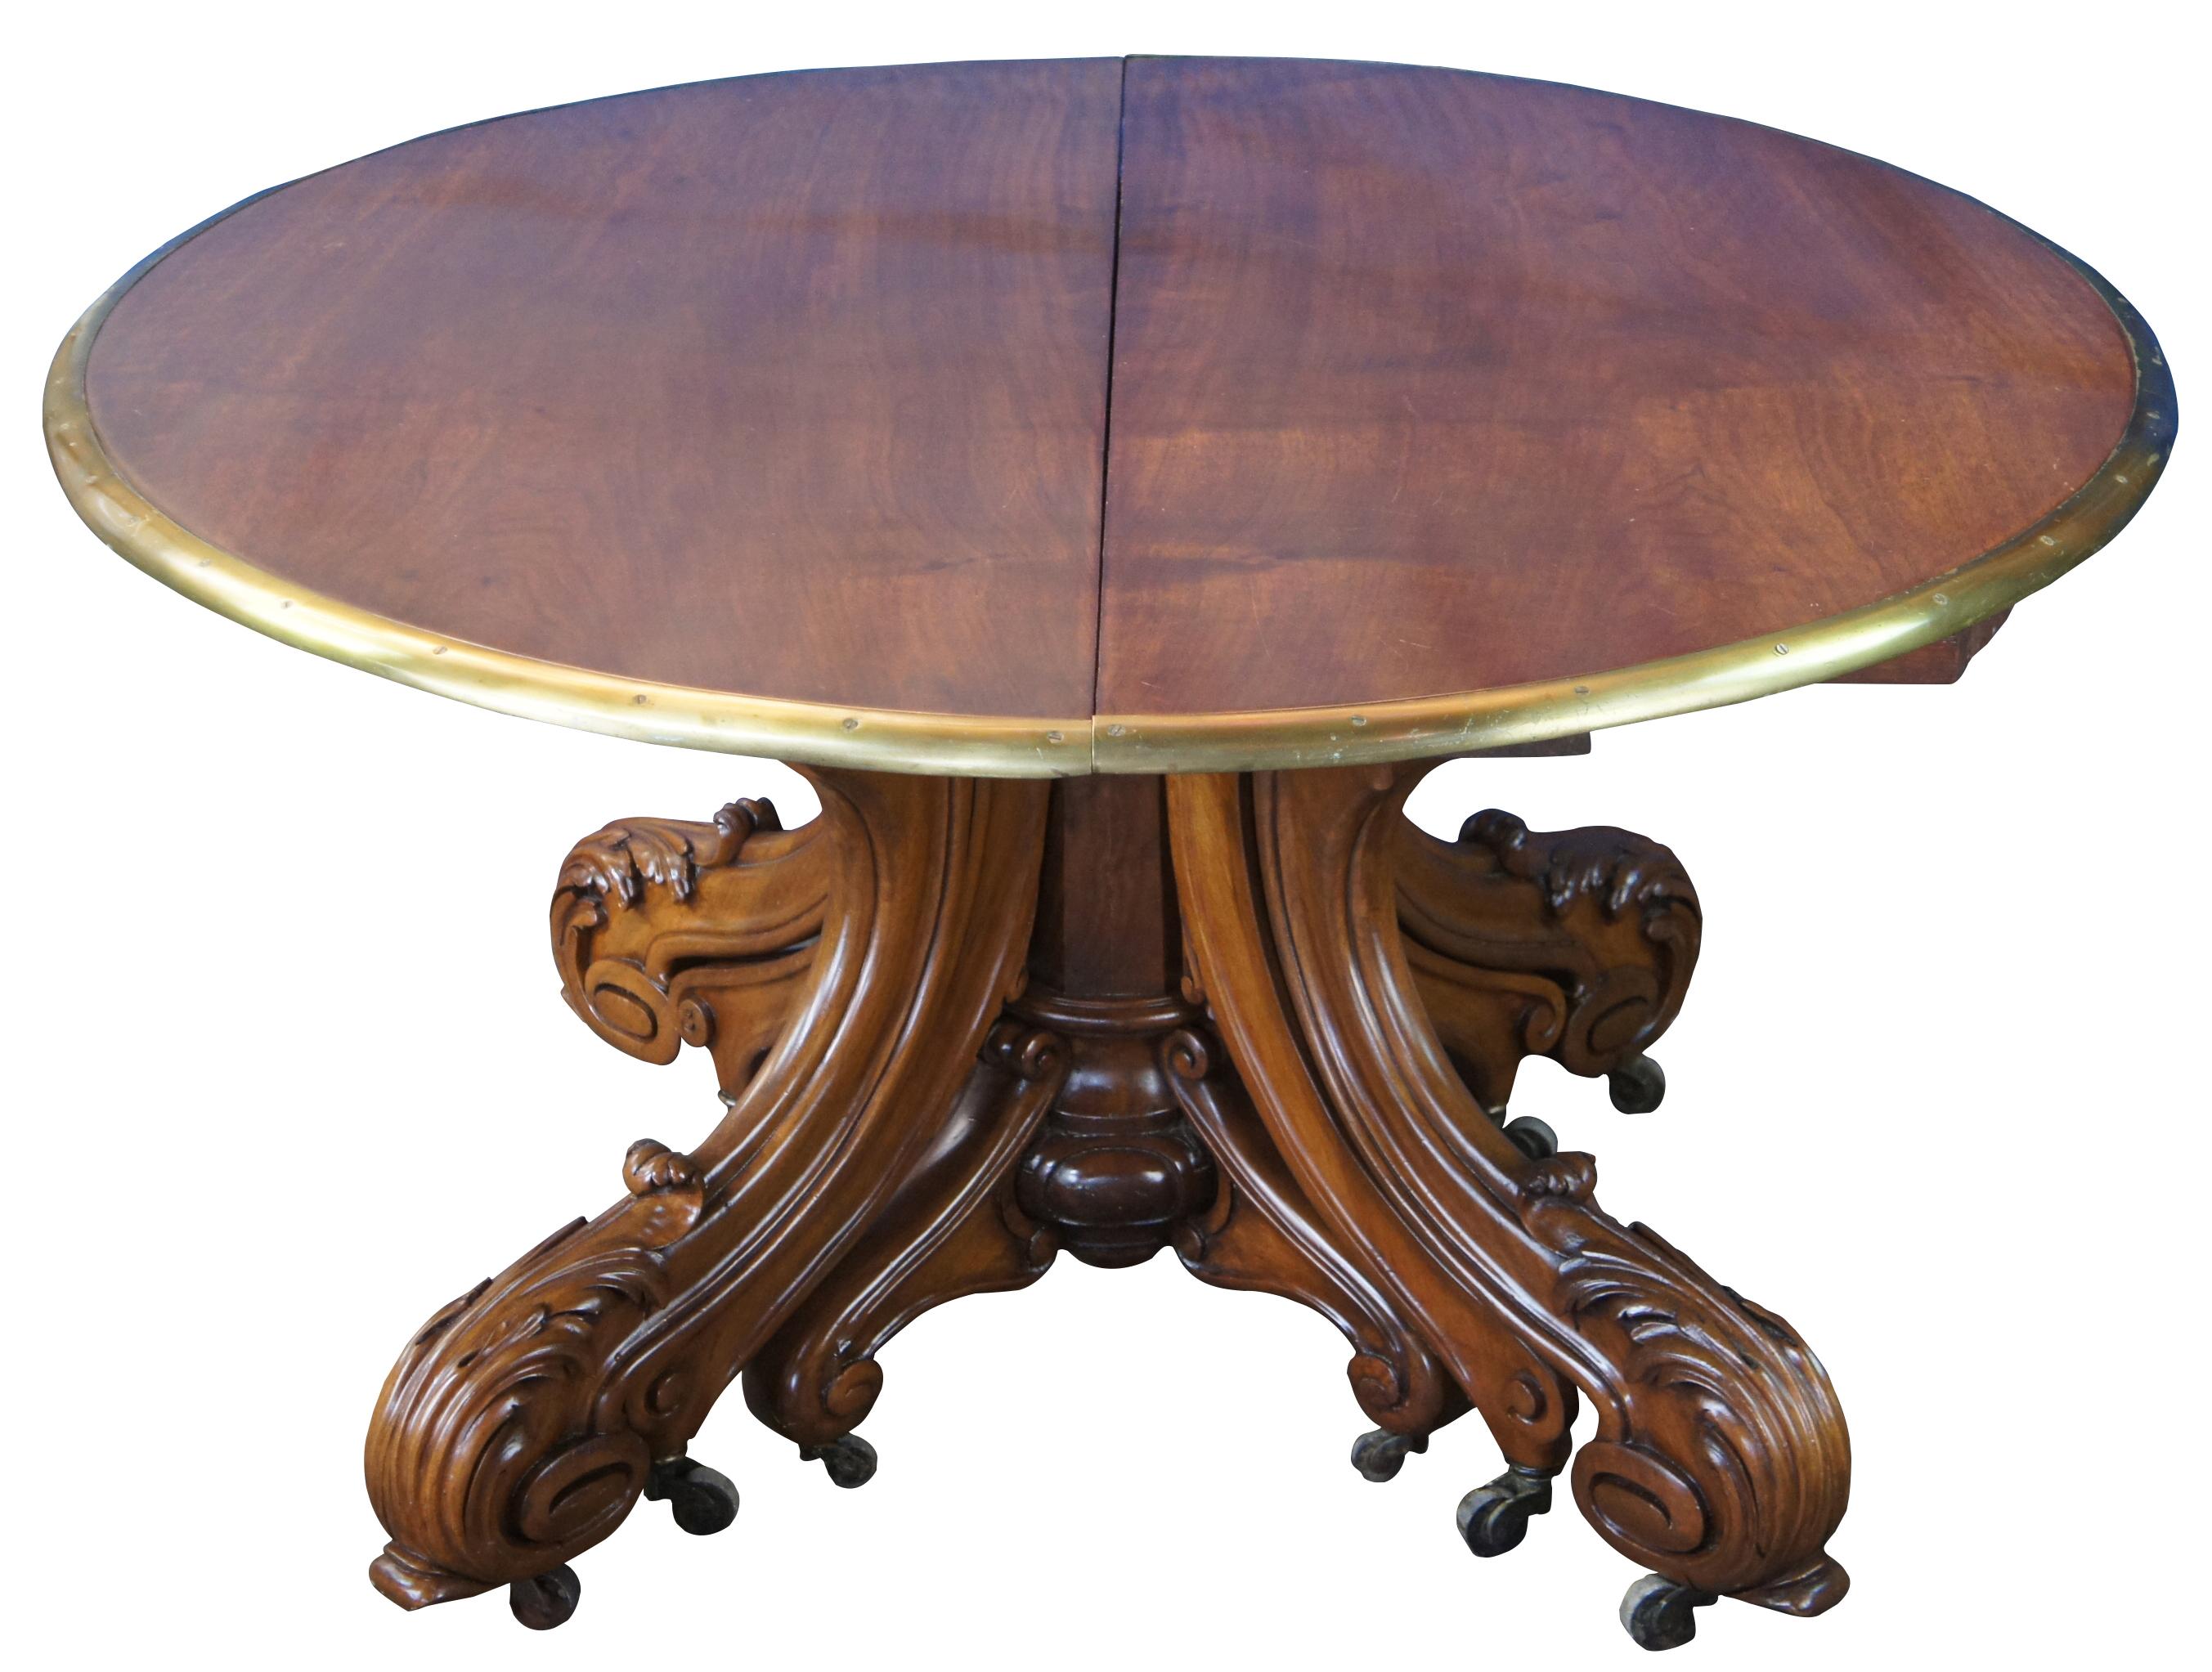 Une belle et impressionnante table de conférence ou de salle à manger ronde extensible de qualité muséale, vers les années 1850. Fabriqué en noyer massif avec un plateau en laiton extensible en 3 étapes. Pieds sculptés et à volutes d'acanthe, ainsi